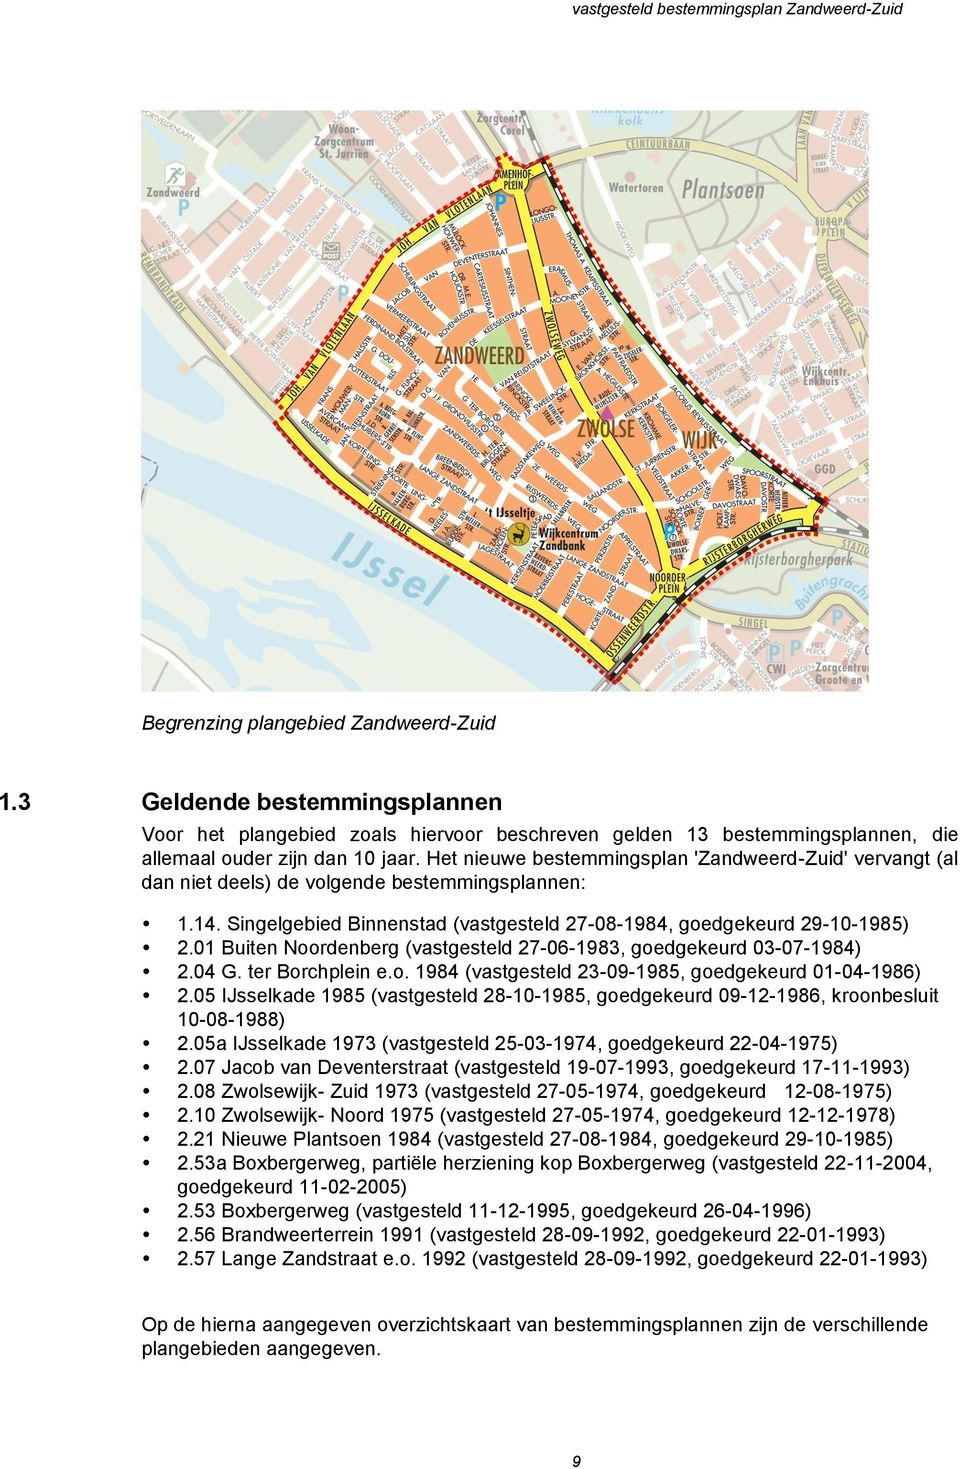 01 Buiten Noordenberg (vastgesteld 27-06-1983, goedgekeurd 03-07-1984) 2.04 G. ter Borchplein e.o. 1984 (vastgesteld 23-09-1985, goedgekeurd 01-04-1986) 2.